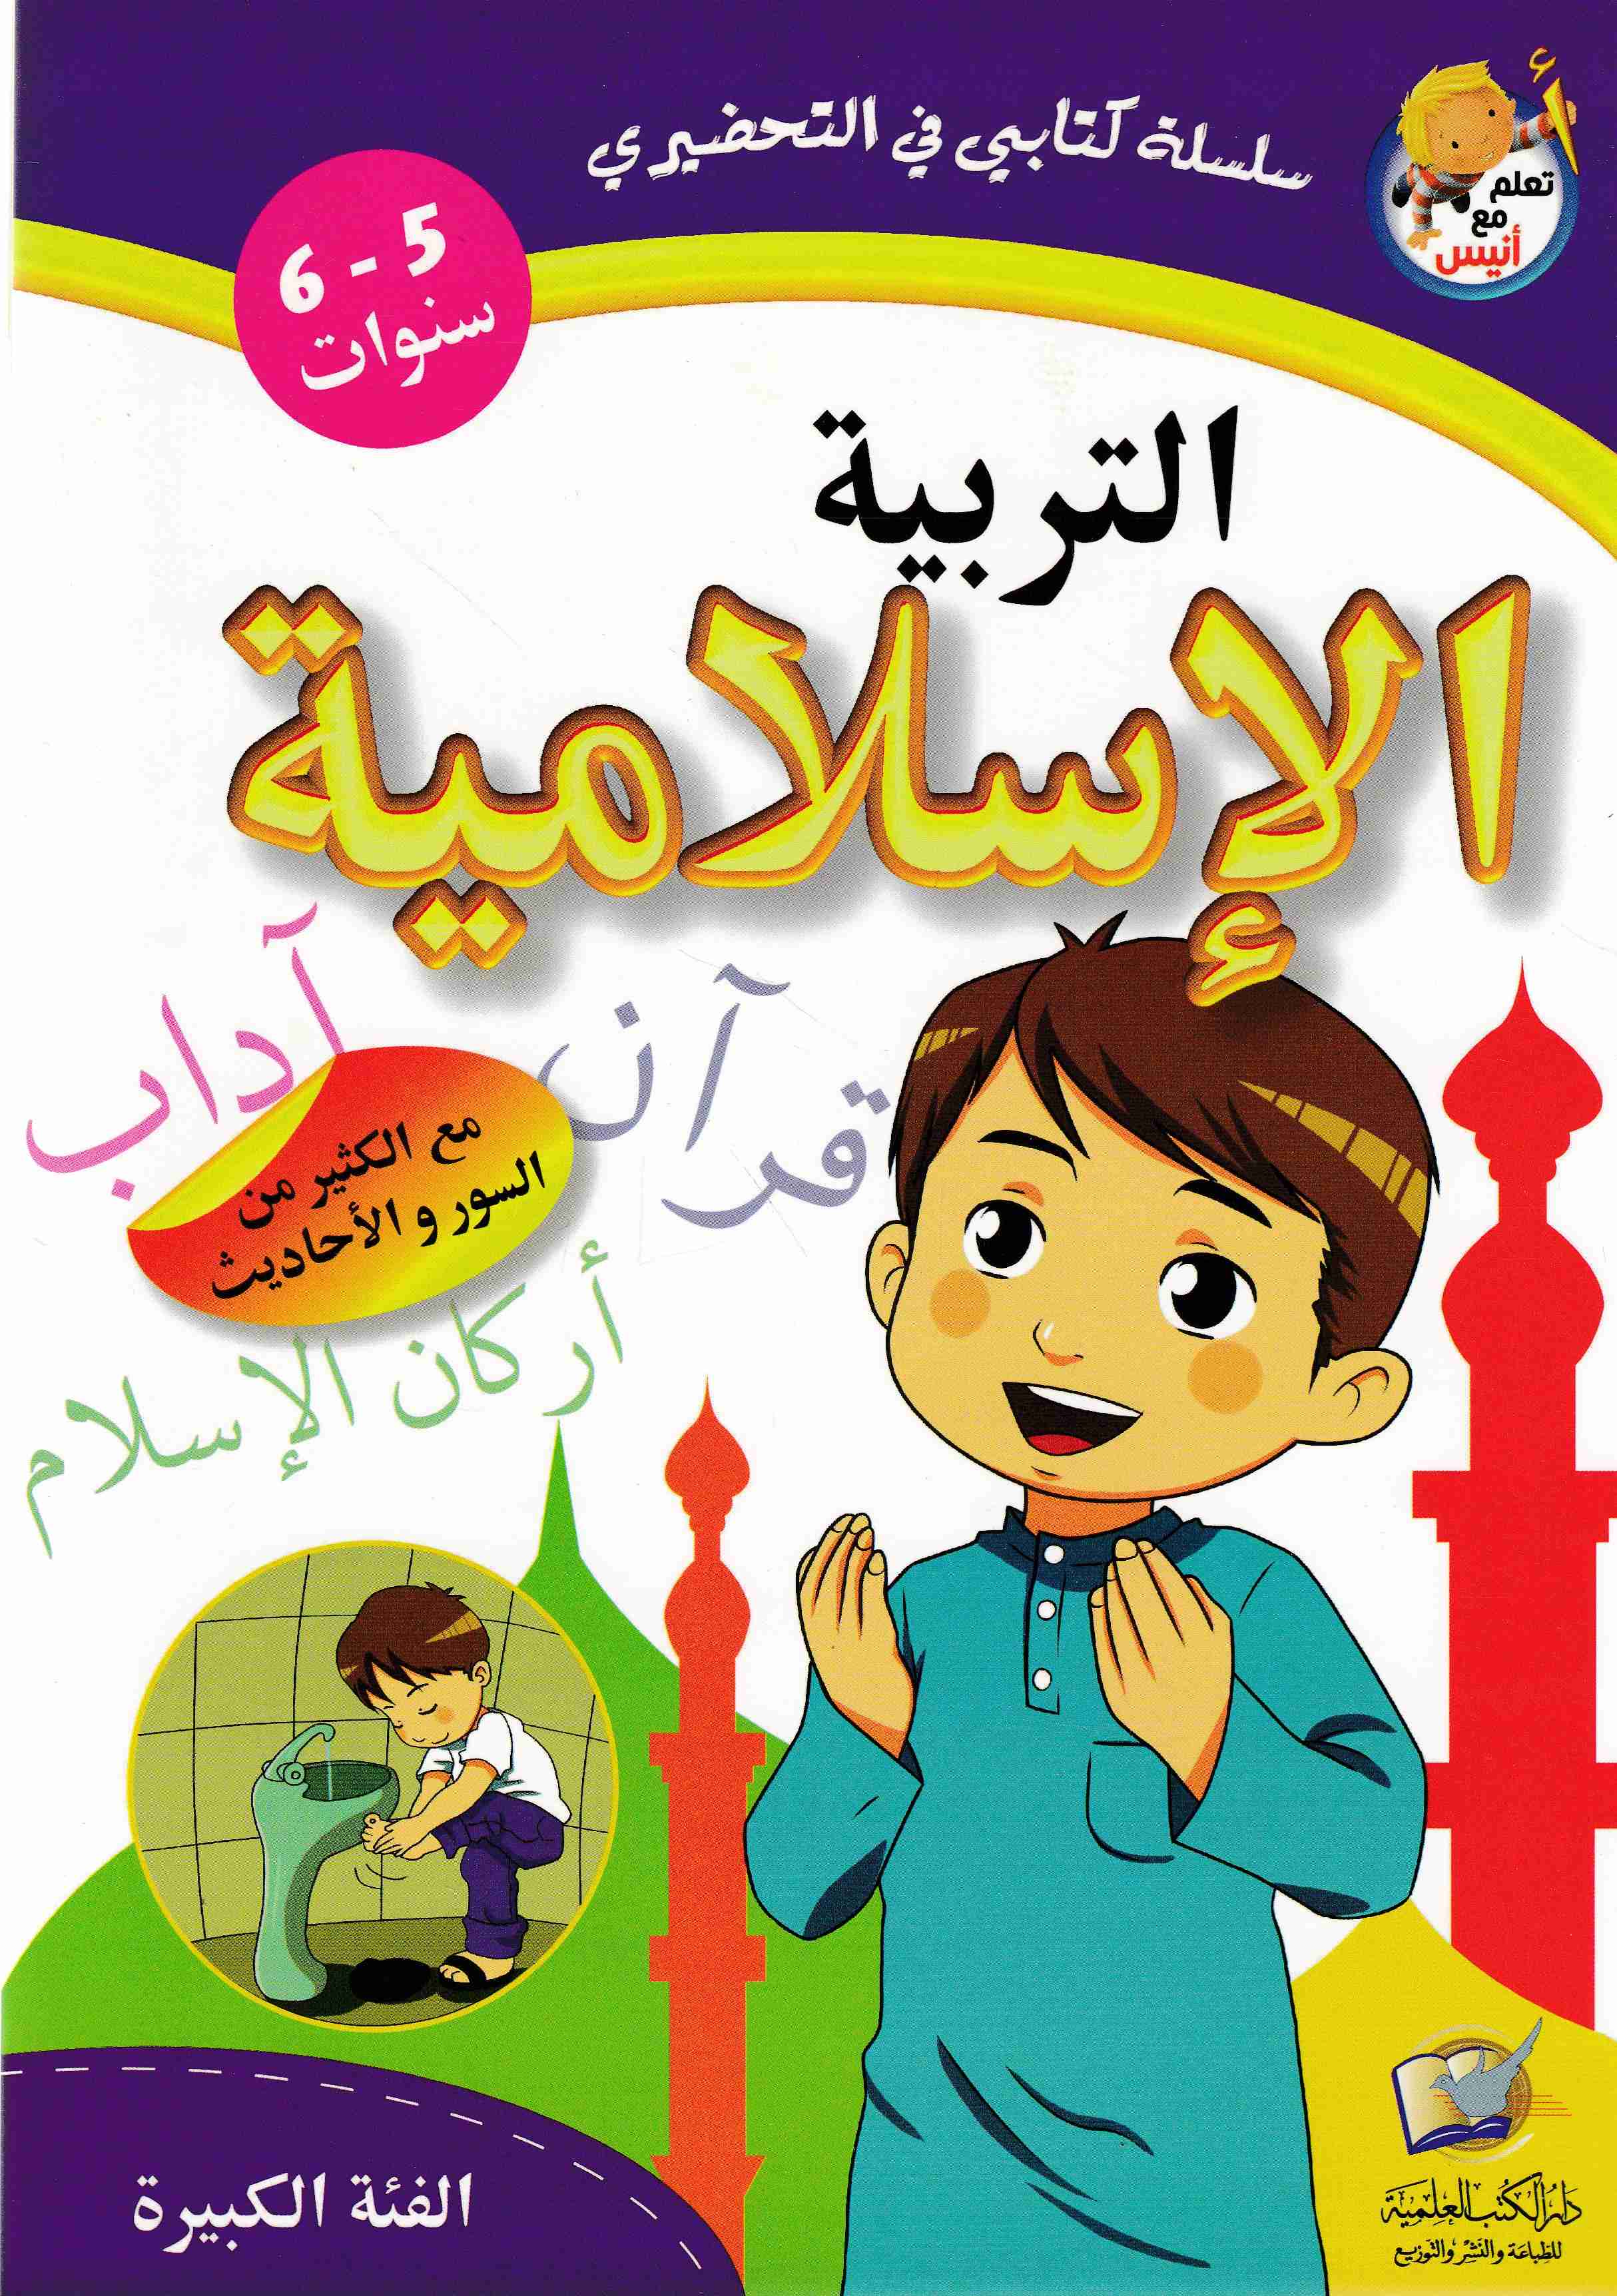 تعلم مع أنيس التربية الإسلامية 5-6 سنوات